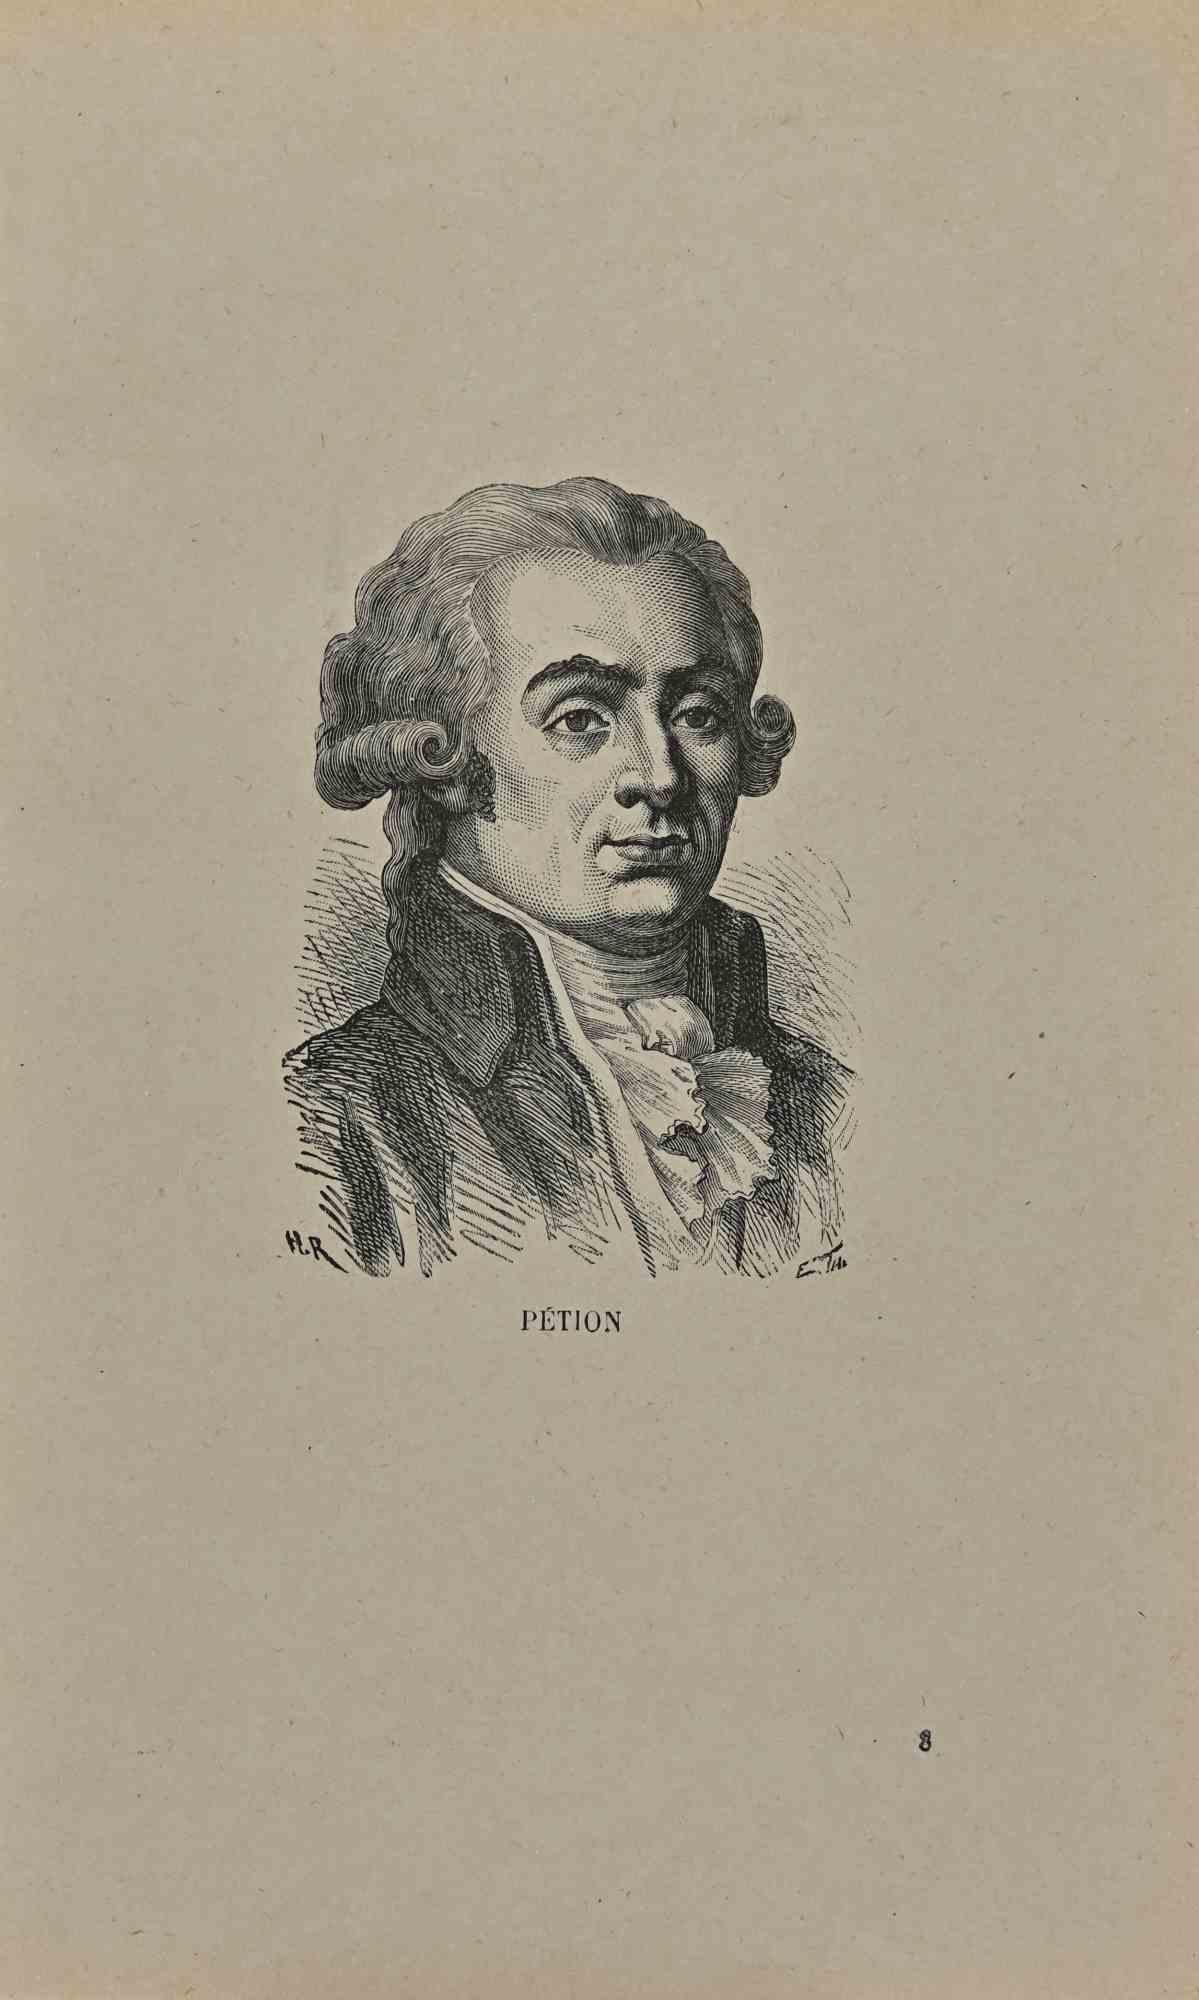 Unknown Portrait Print – Porträt von Jrme Ption de Villeneuve – Lithographie – frühes 19. Jahrhundert